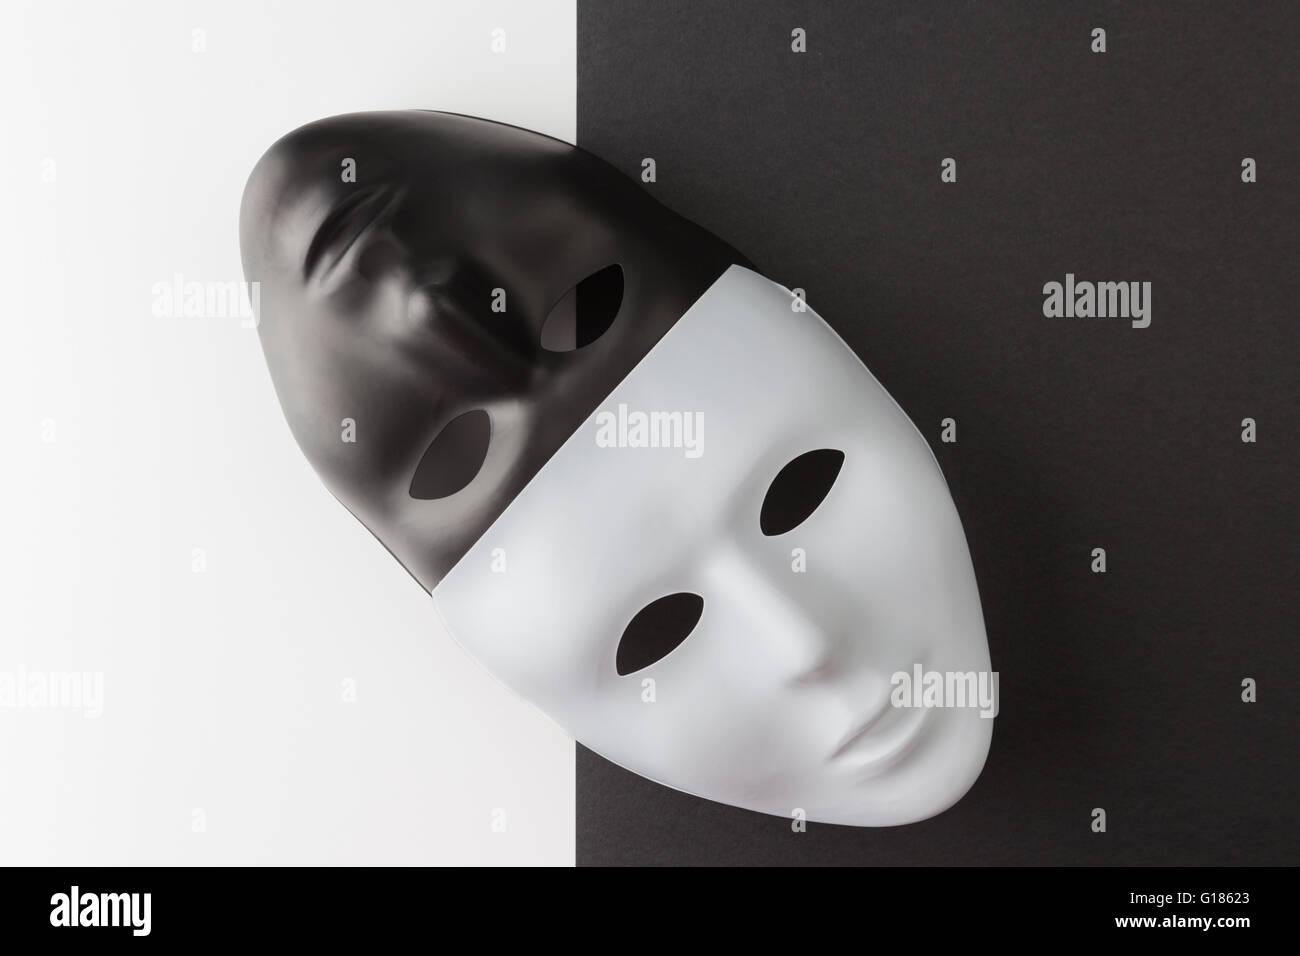 Las máscaras en blanco y negro colocados diagonalmente sobre un fondo contrastante. Concepto de anonimato en la Web Foto de stock